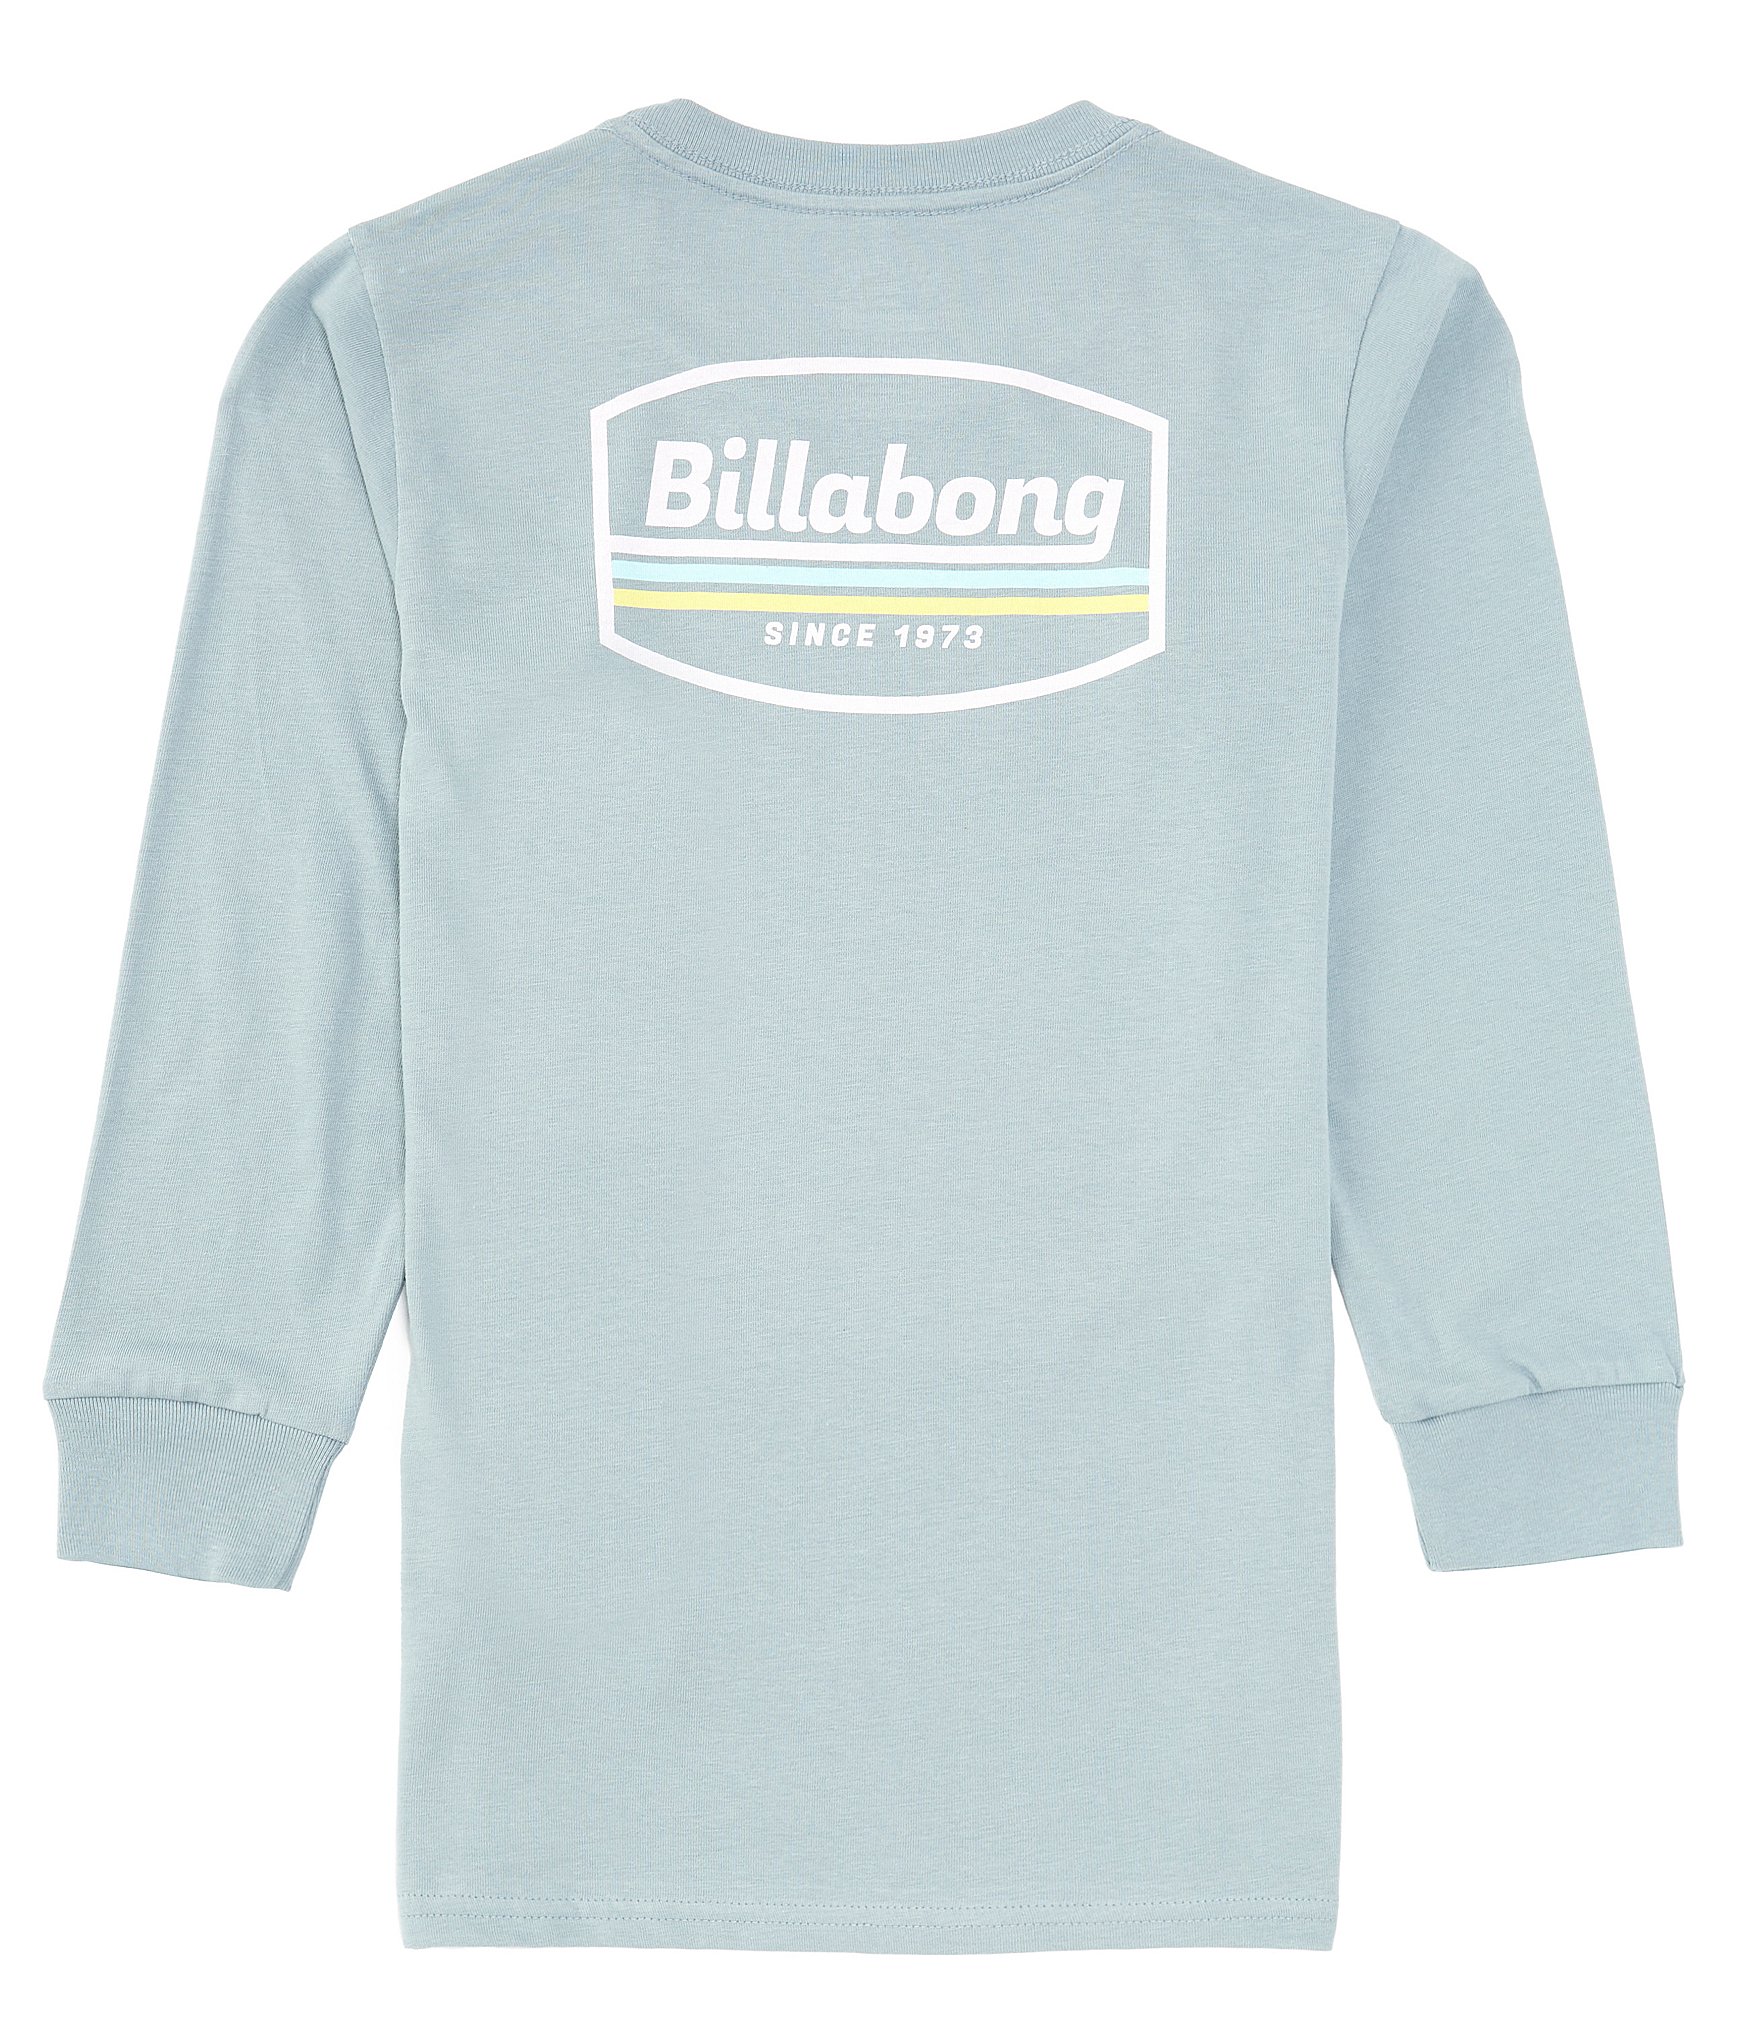 Billabong Little Boys 2T-7 Long Sleeve Walled Graphic T-Shirt Dillard's